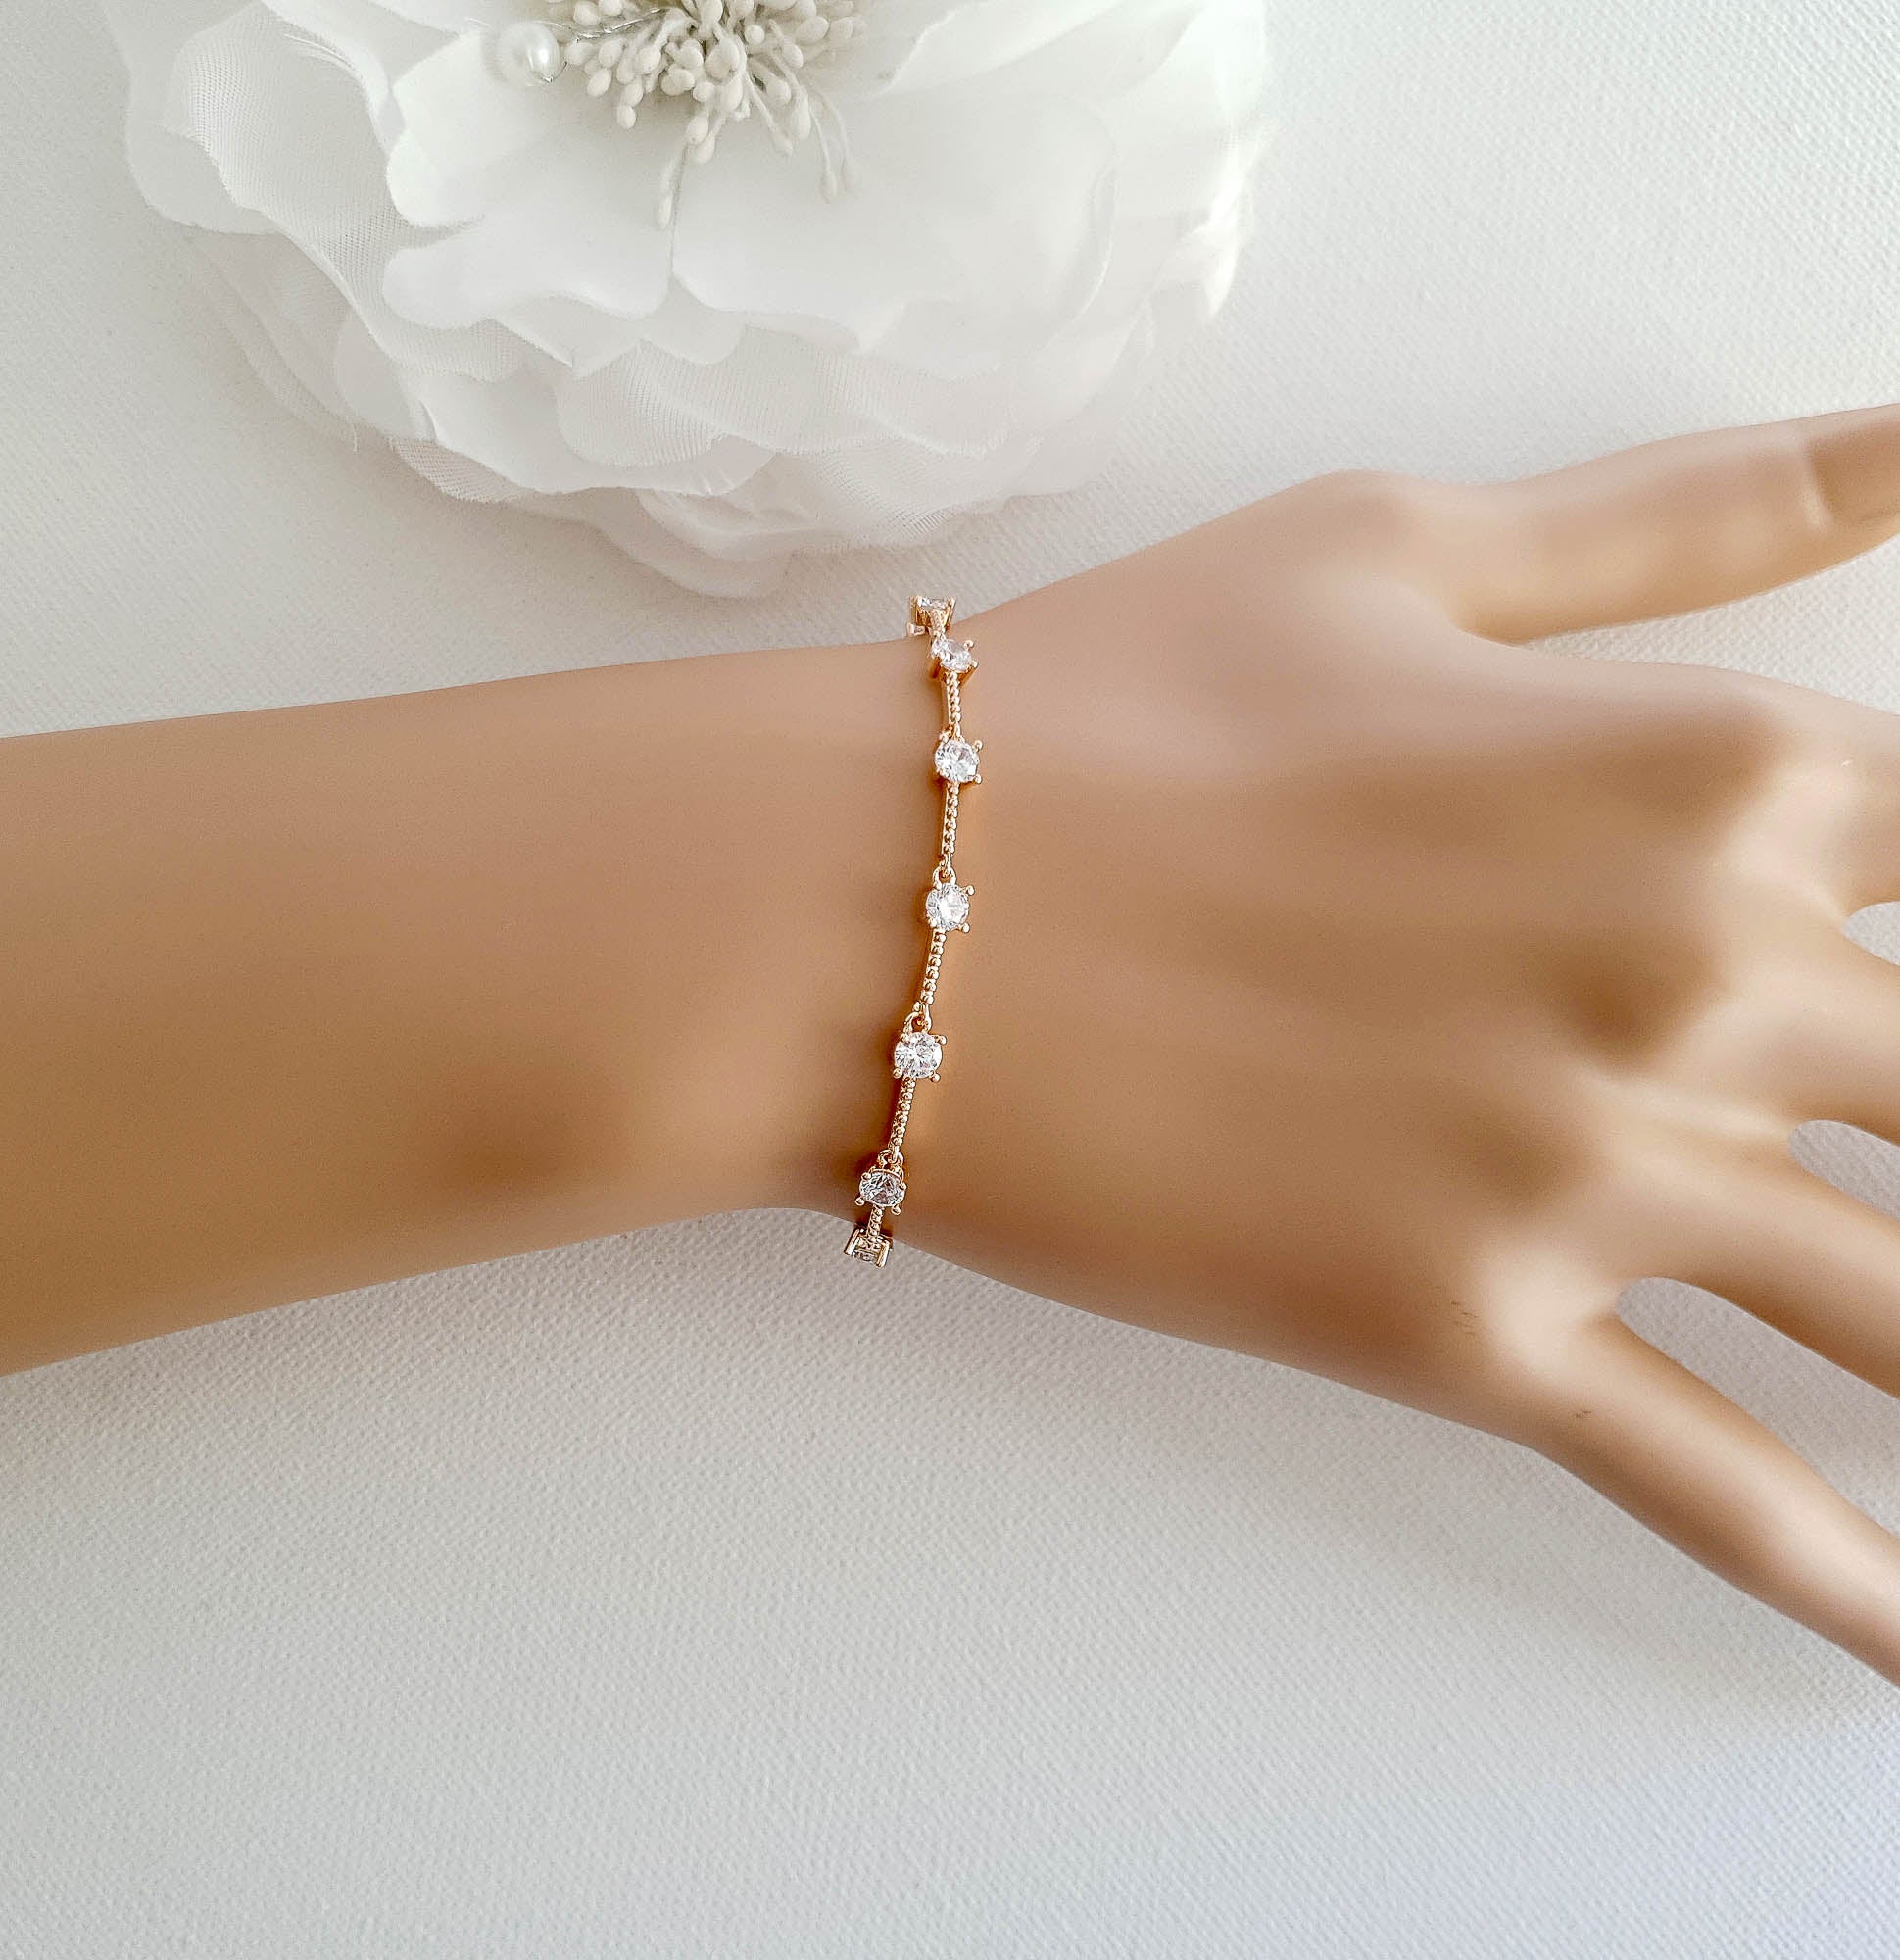 Designer Bracelets for Women | Jewelry | FARFETCH US